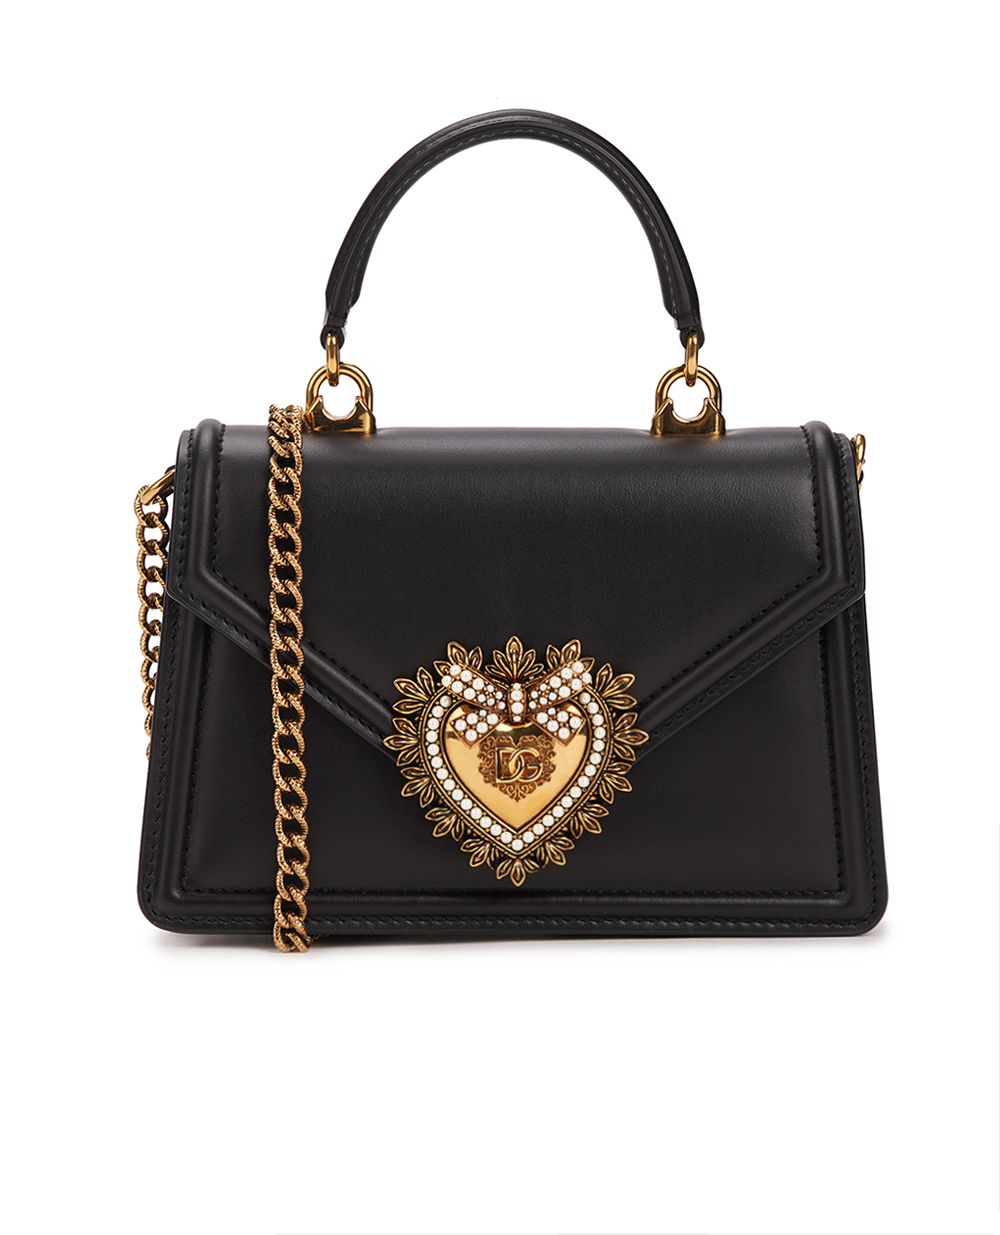 Кожаная сумка Devotion Small Dolce&Gabbana BB6711-AV893, черный цвет • Купить в интернет-магазине Kameron